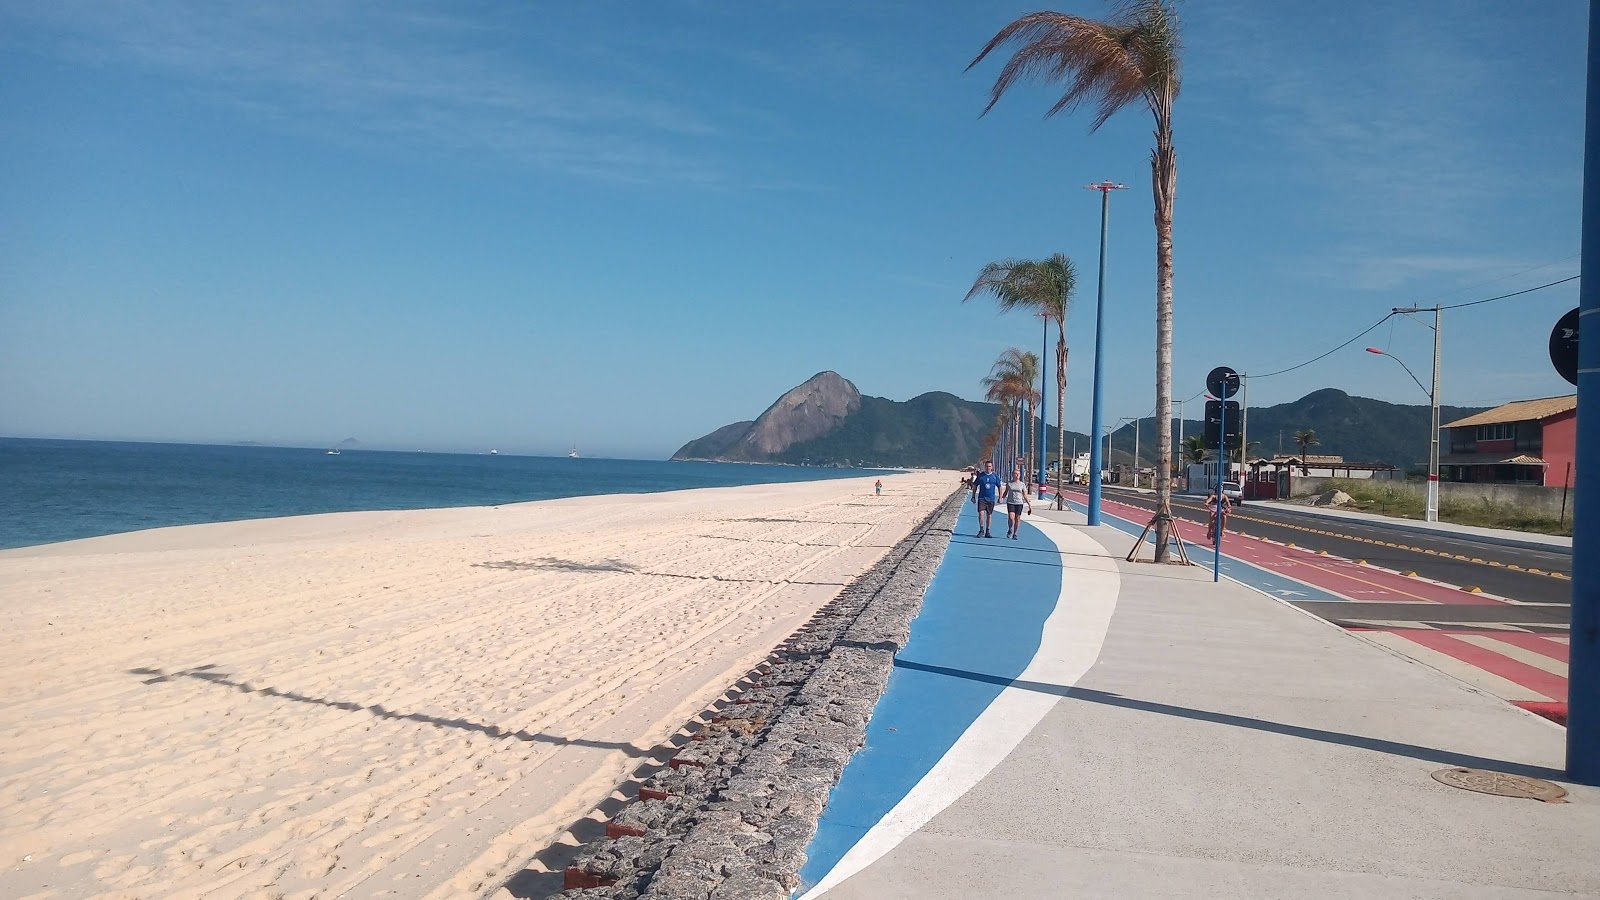 Foto af Praia do Frances - populært sted blandt afslapningskendere